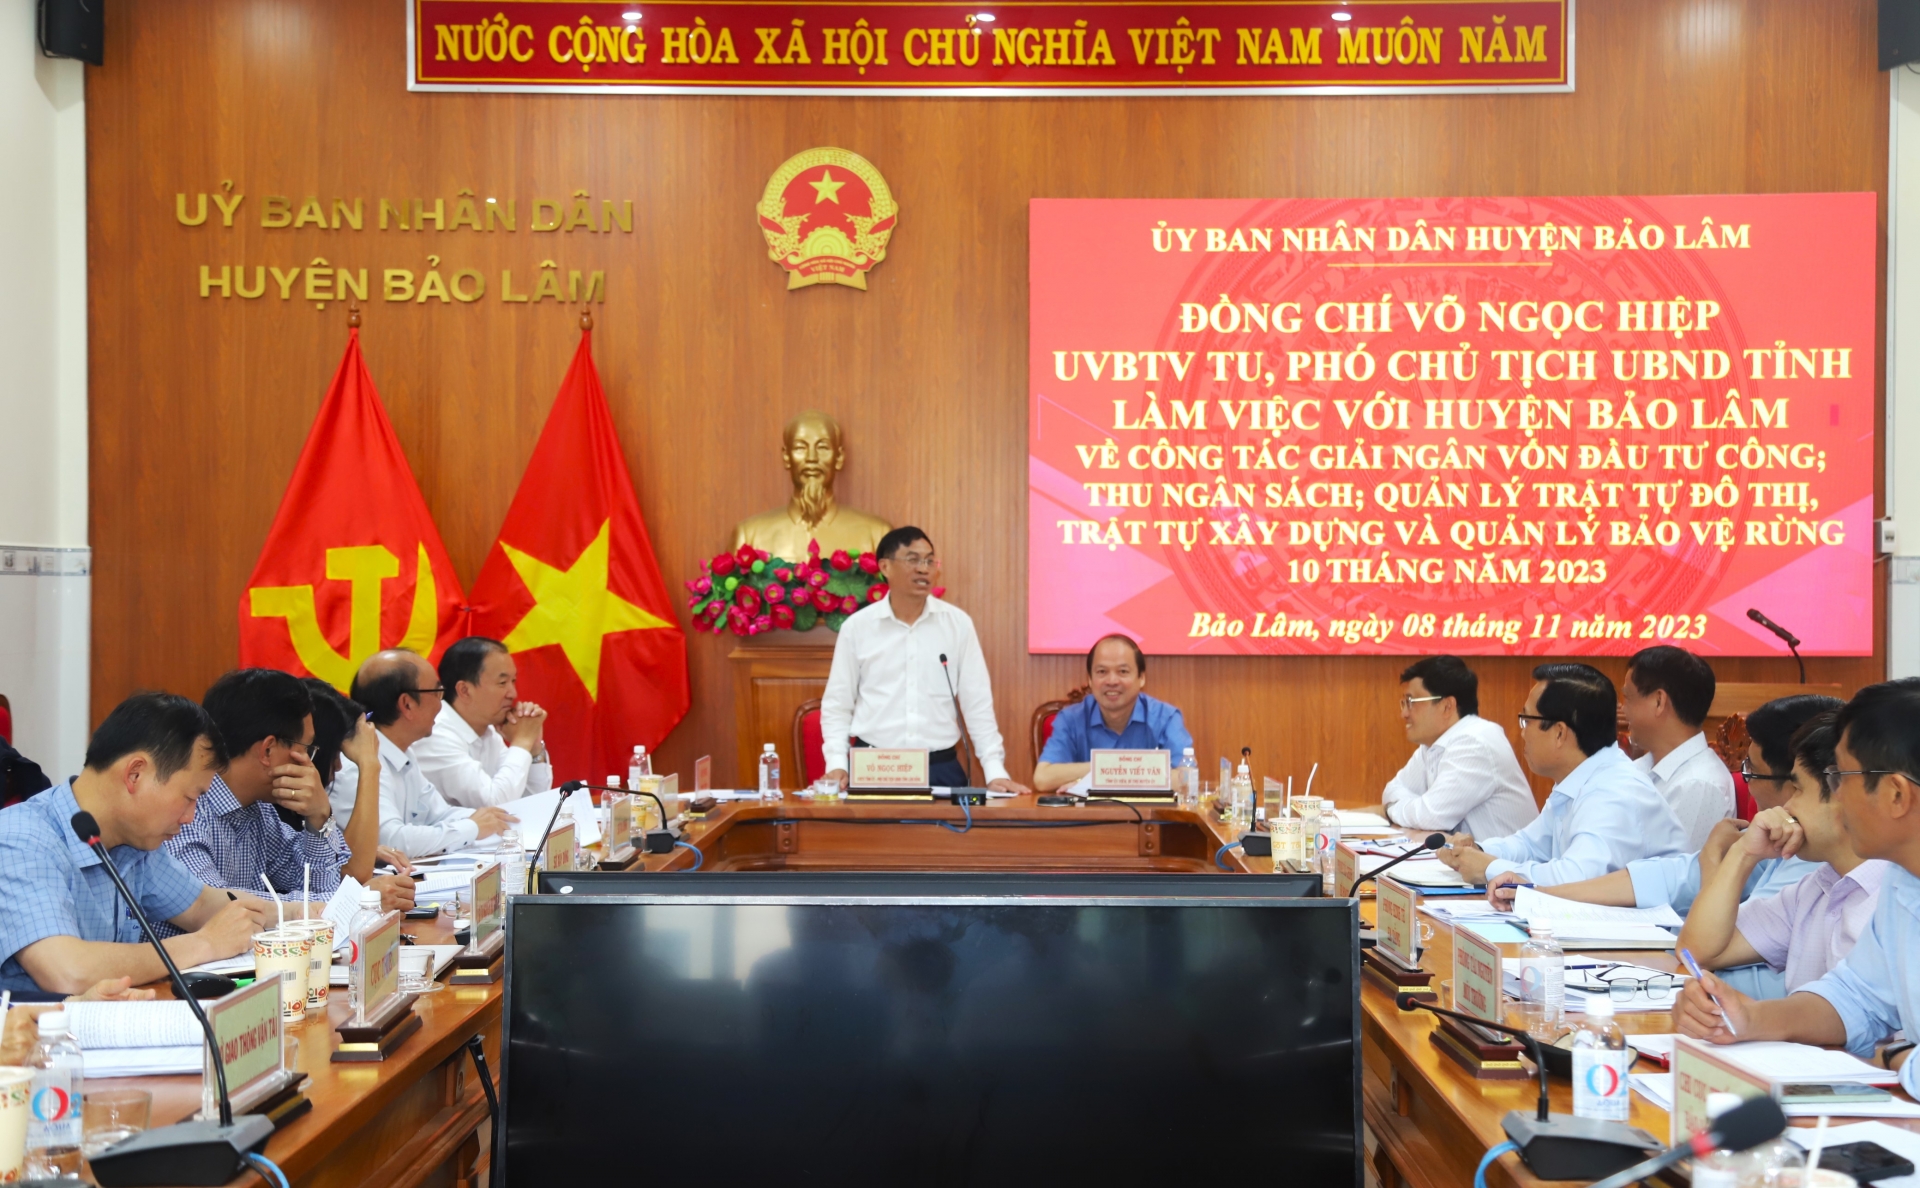 Phó Chủ tịch UBND tỉnh Lâm Đồng Võ Ngọc Hiệp làm việc với huyện Bảo Lâm